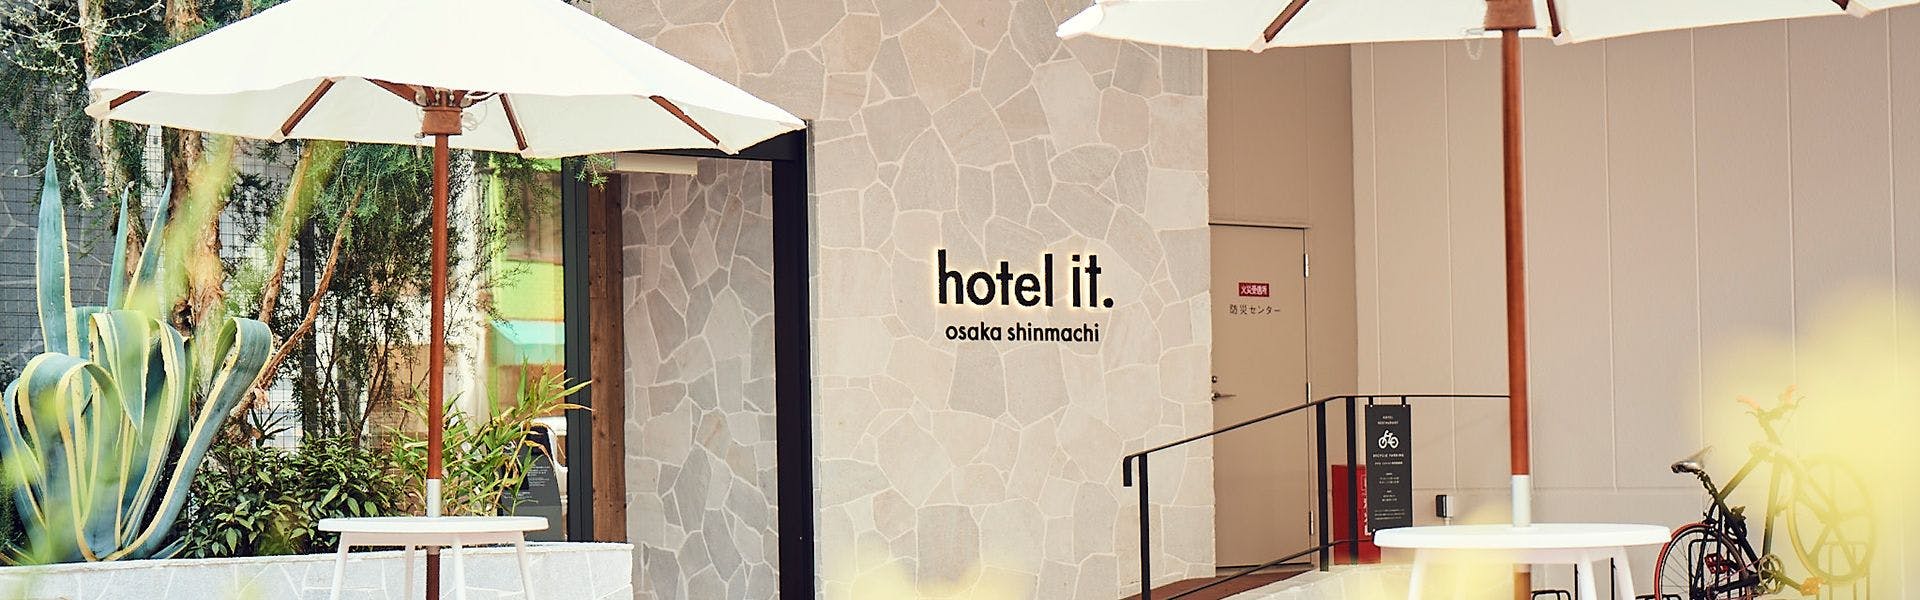 記念日におすすめのホテル・【hotel it. osaka shinmachi】 の空室状況を確認するの写真2